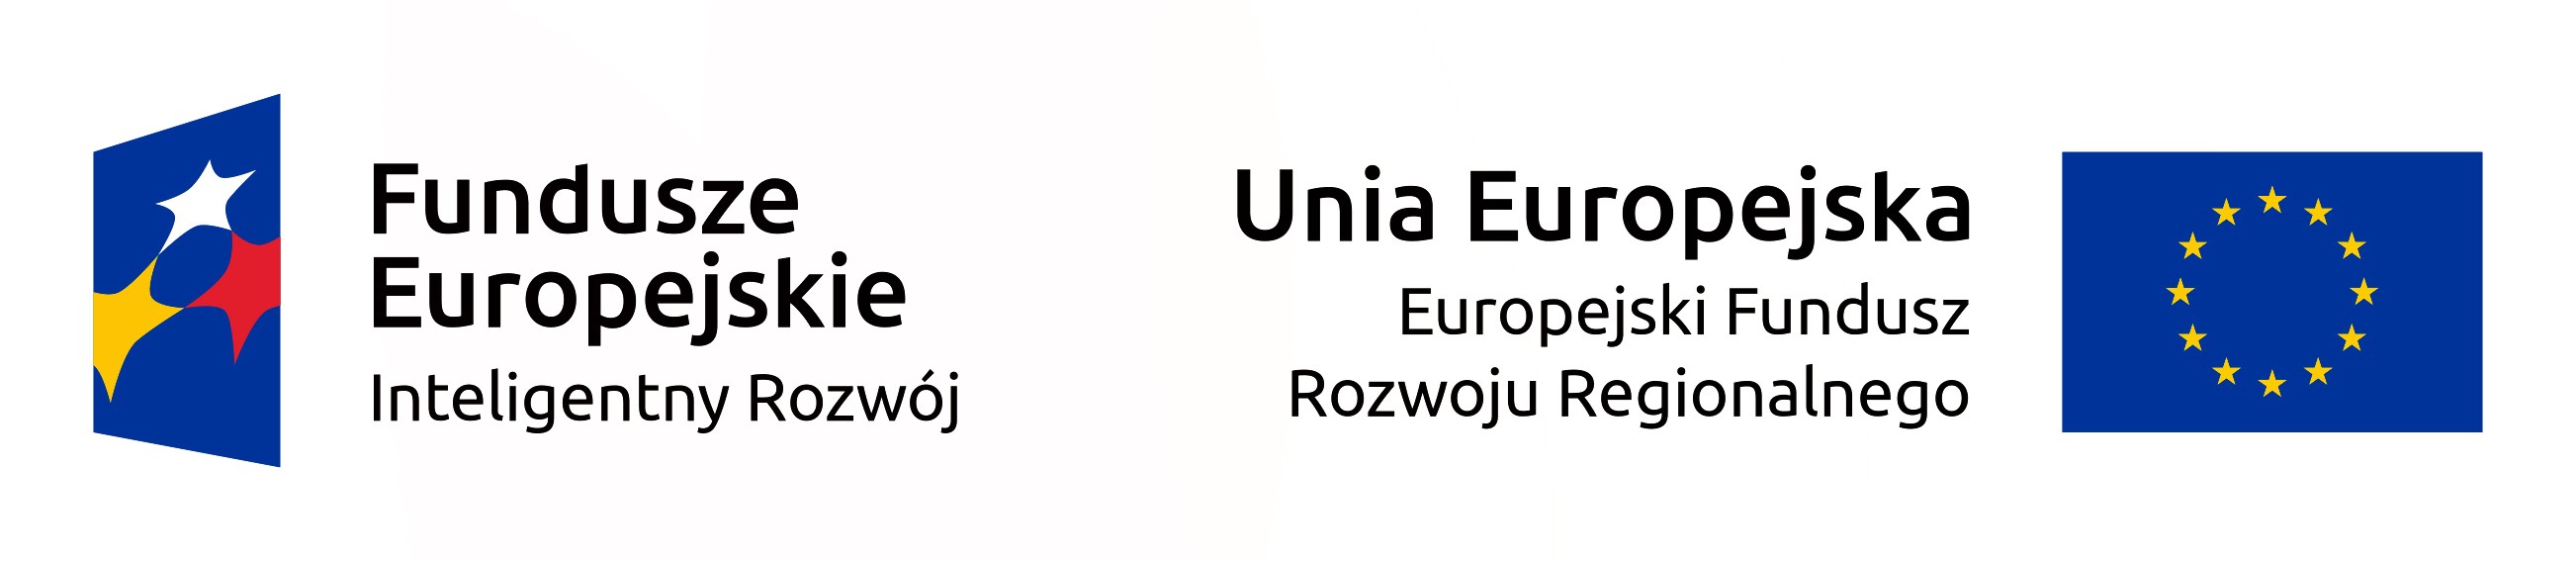 logo Inteligentny rozwój + Unia Europejska.jpg